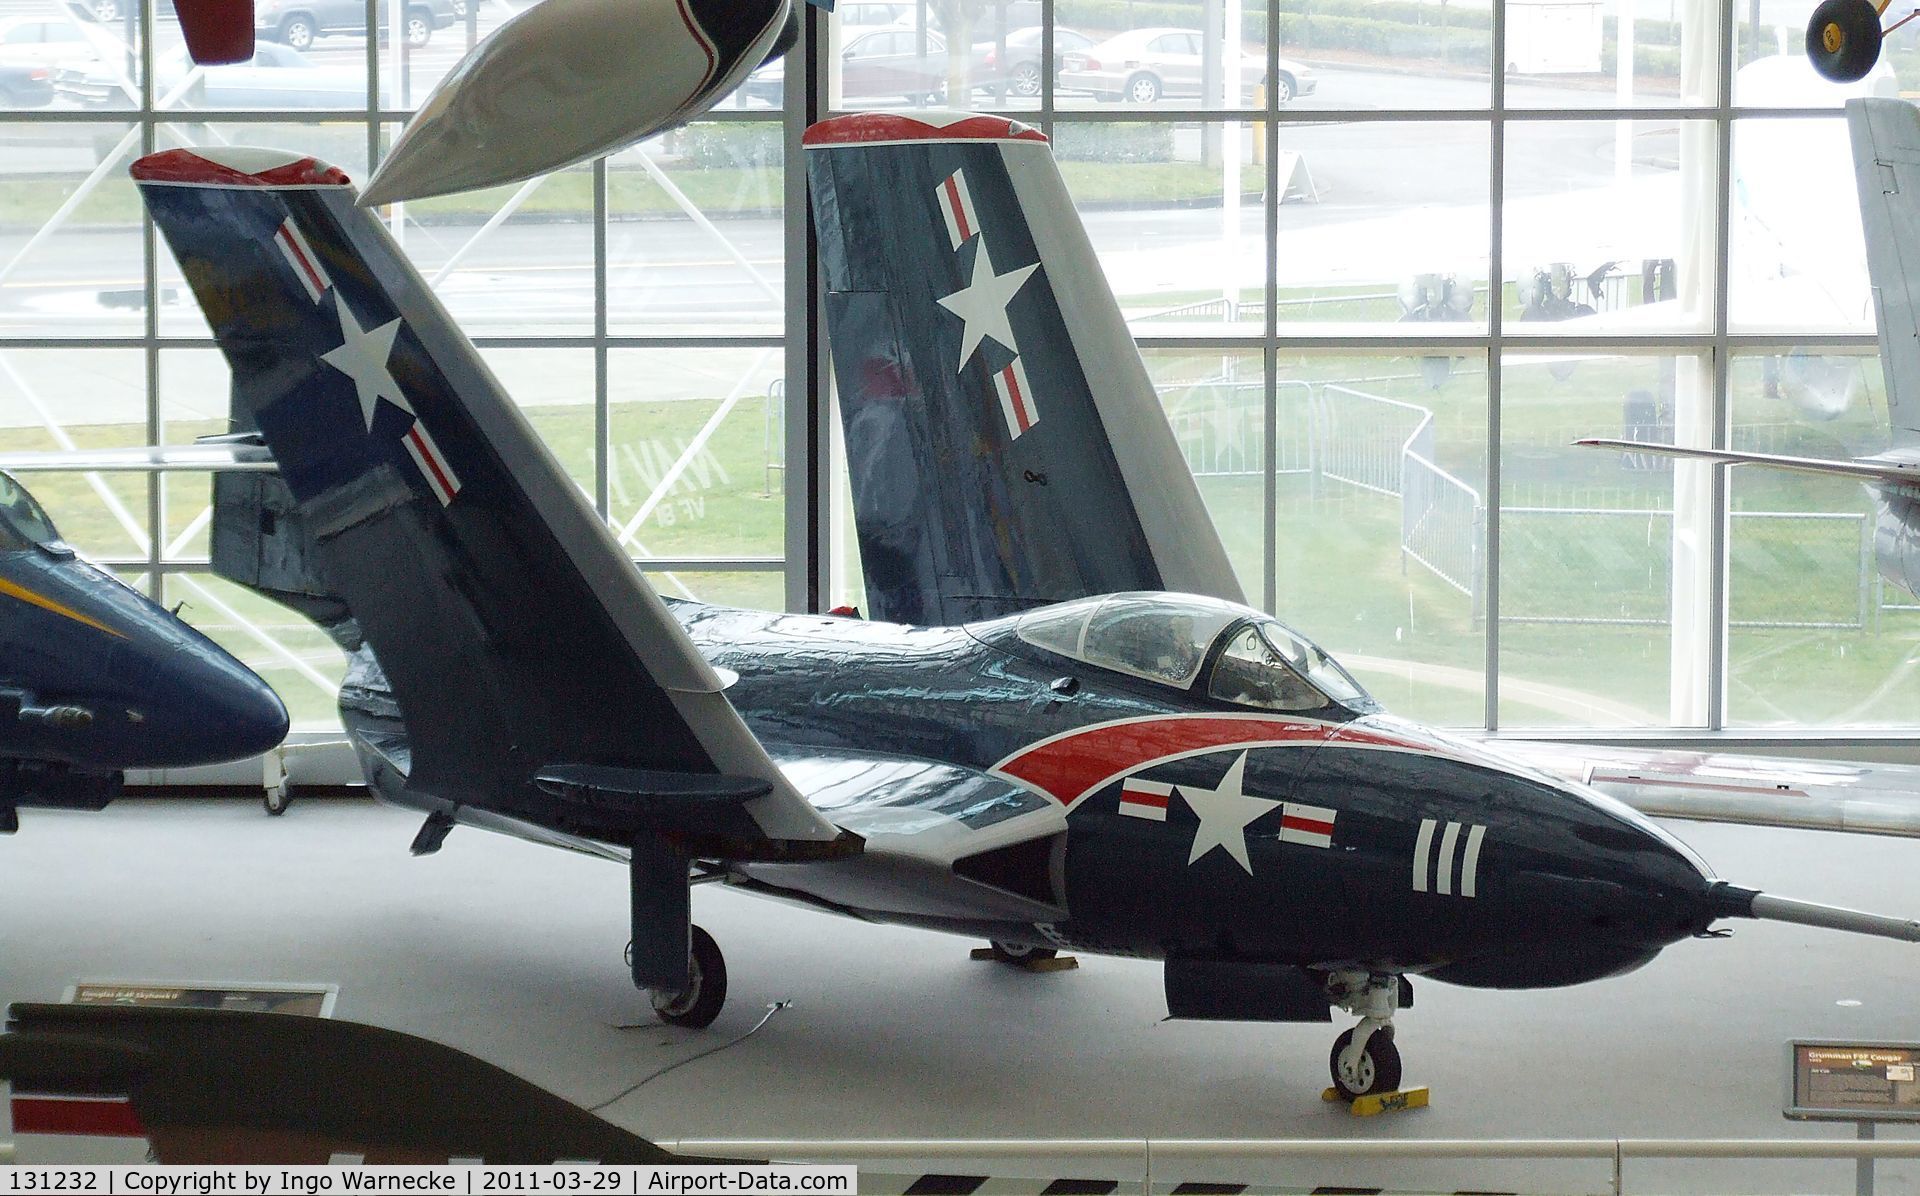 131232, 1954 Grumman F9F-8 (F9-J) Cougar C/N Not found 131232, Grumman F9F-8 Cougar at the Museum of Flight, Seattle WA